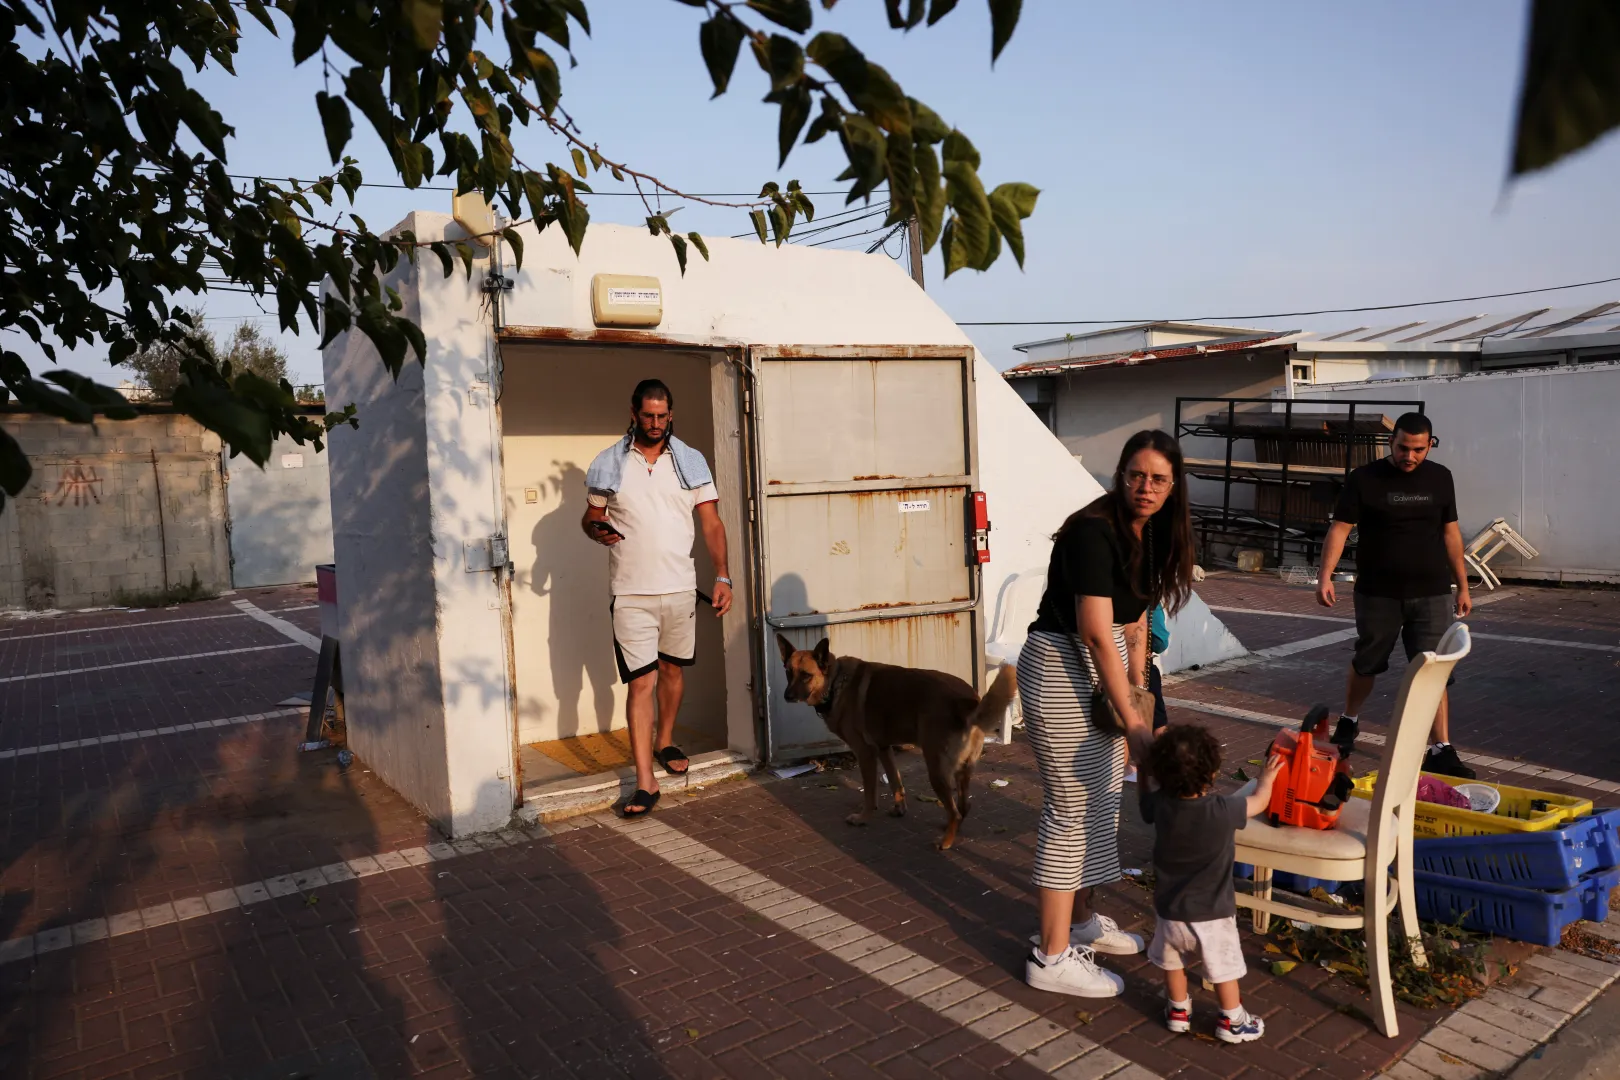 Emberek gyülekeznek egy óvóhely bejáratánál vasárnap délelőtt a dél-izraeli Askelónban – Fotó: Ronen Zvulun / Reuters